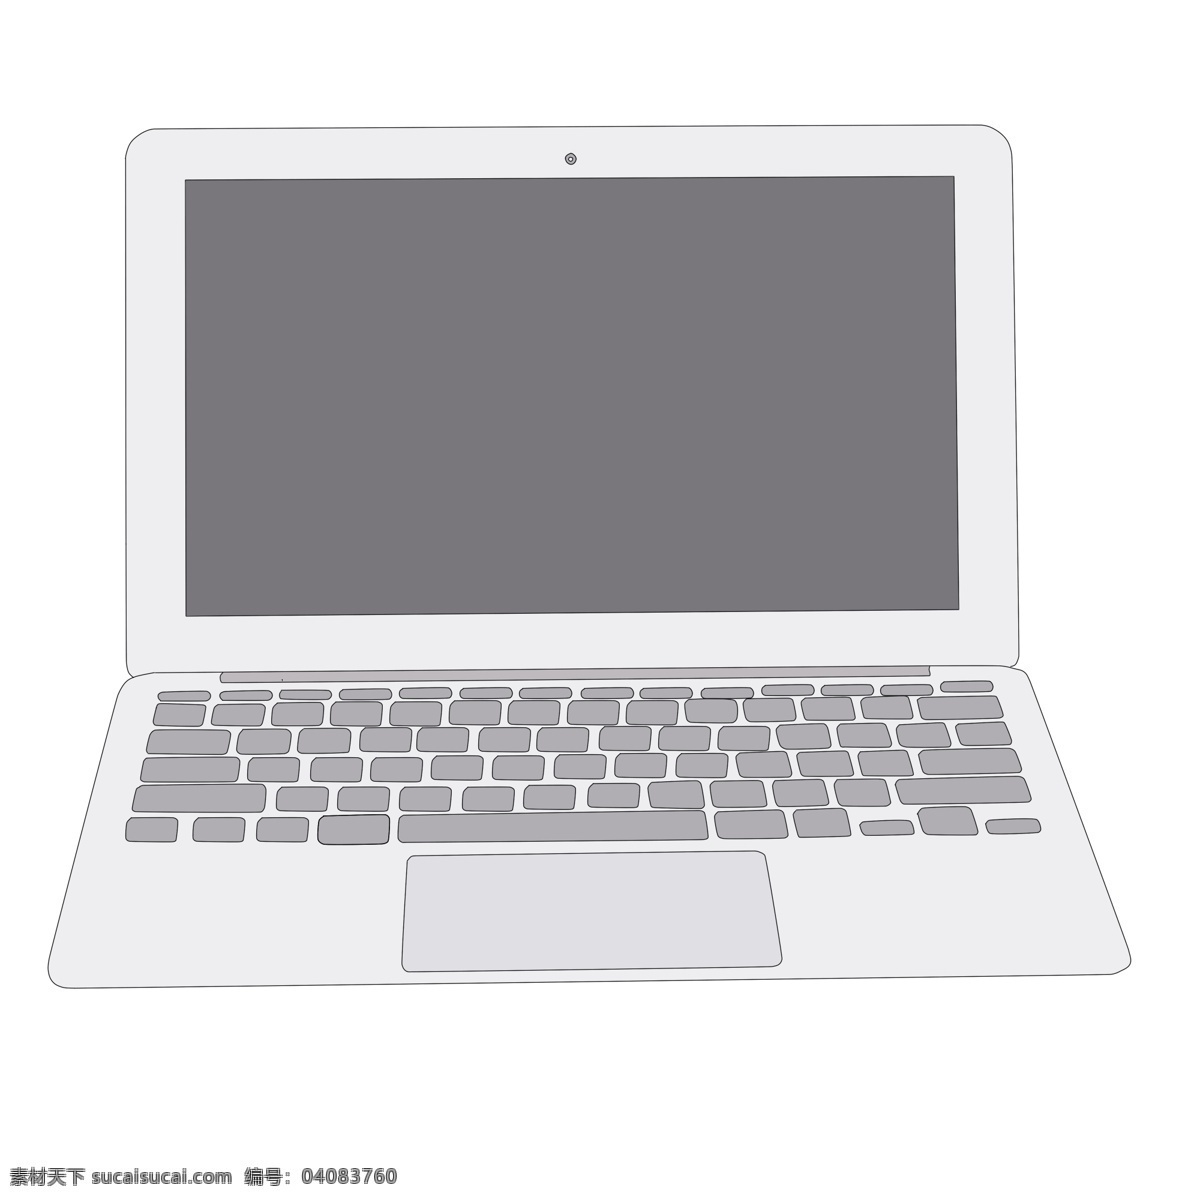 白色 笔记本 电脑 插画 电子产品 智能手机 笔记本电脑 白色笔记本 电脑插图